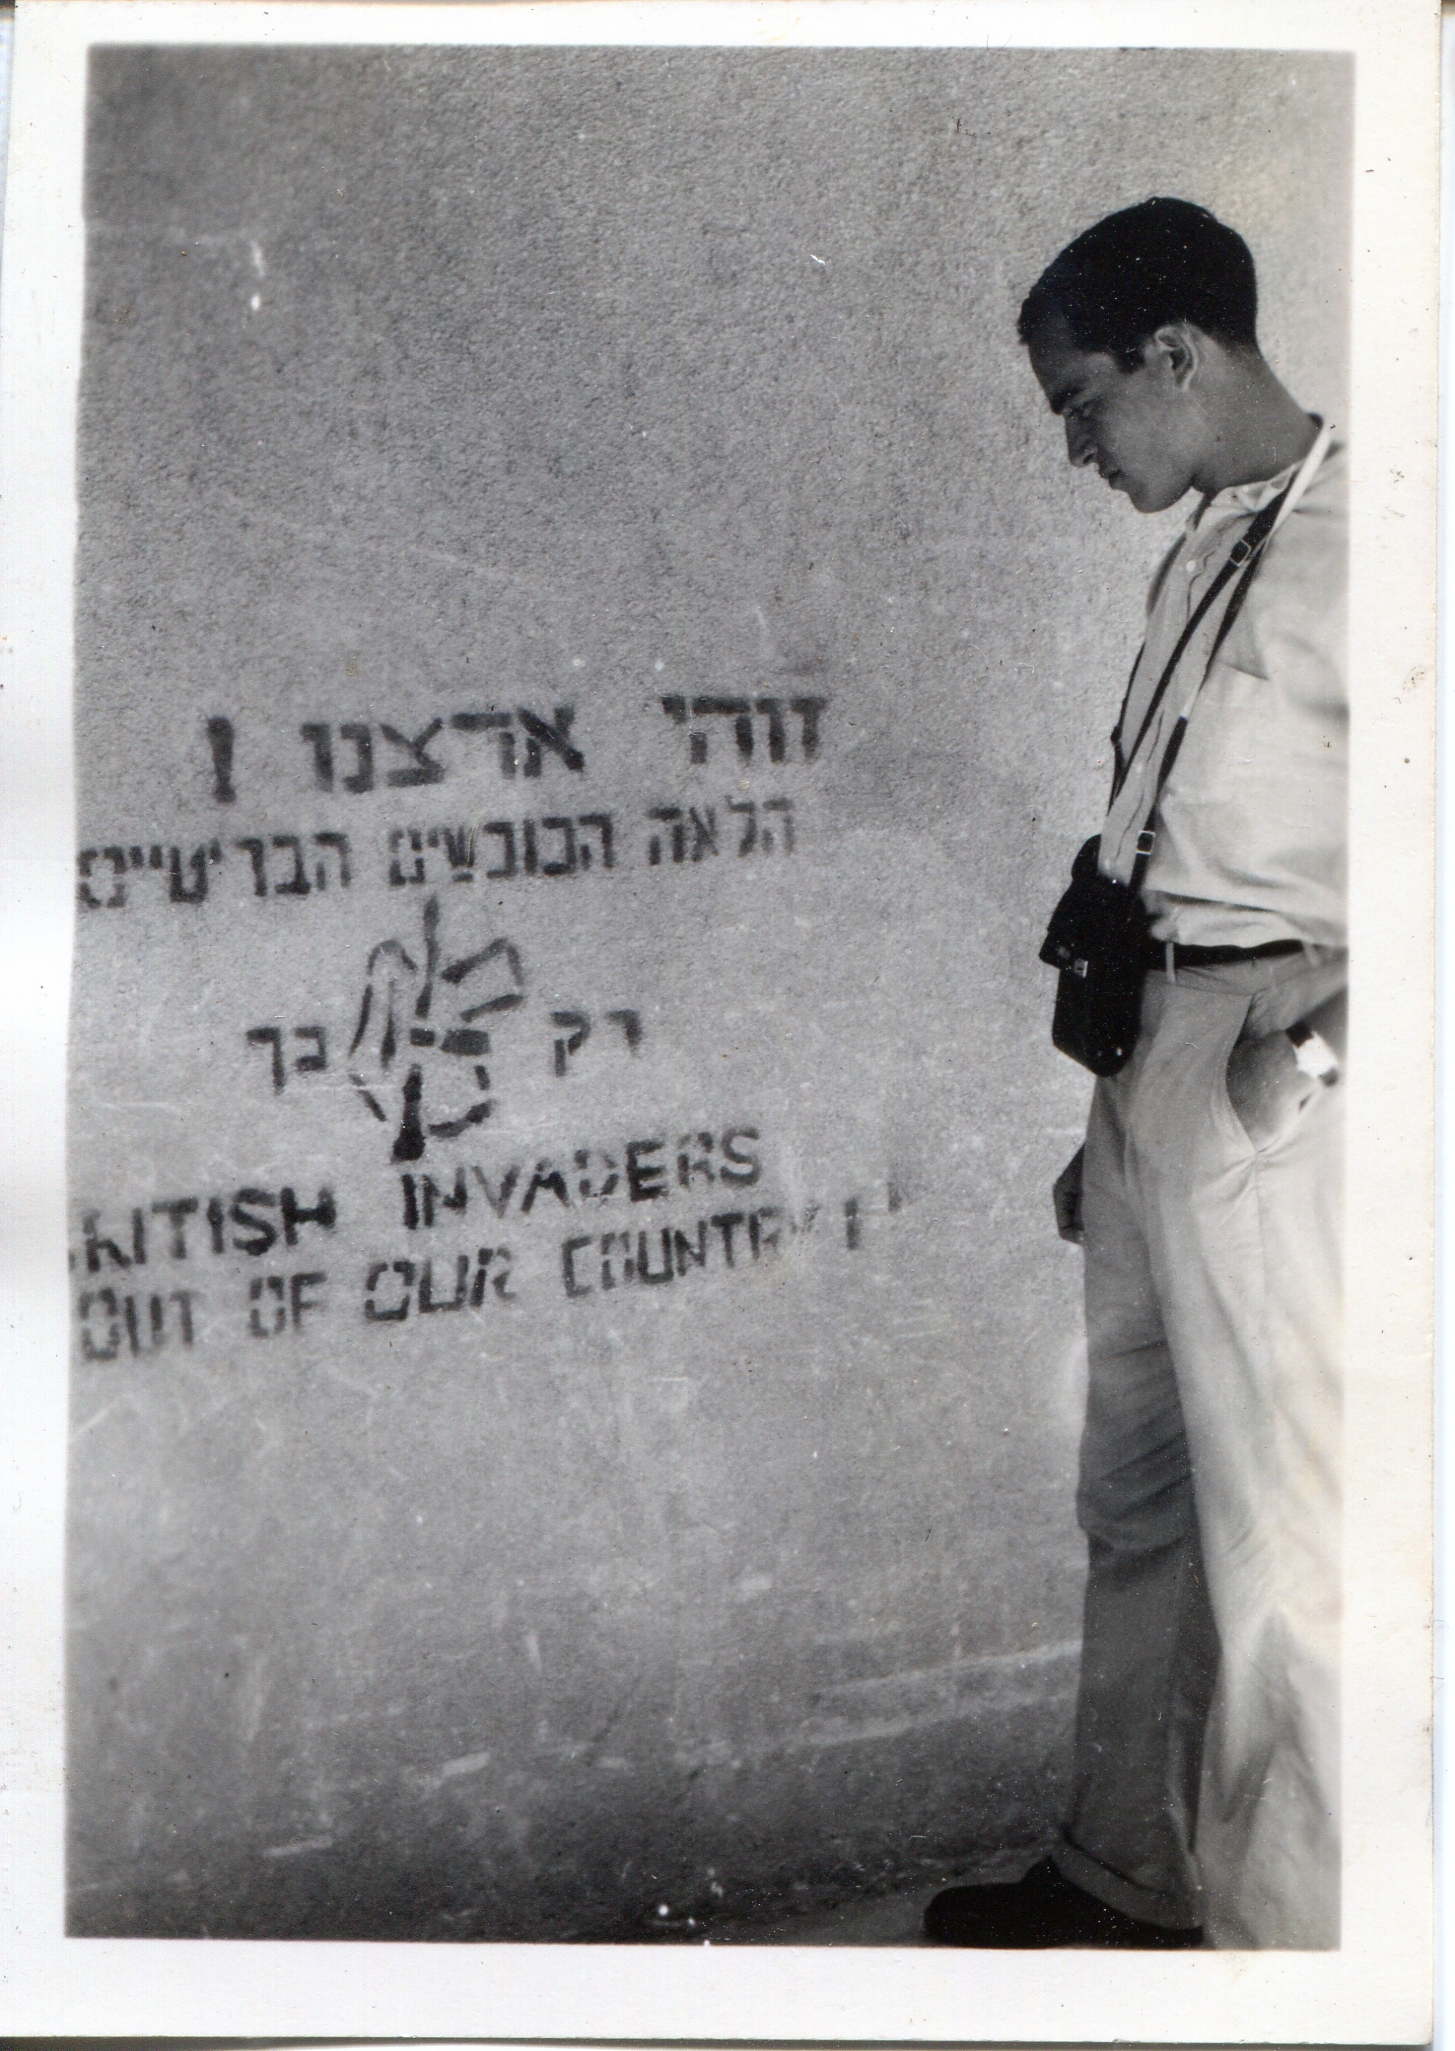 LIB looking at graffiti in Palestine 1947